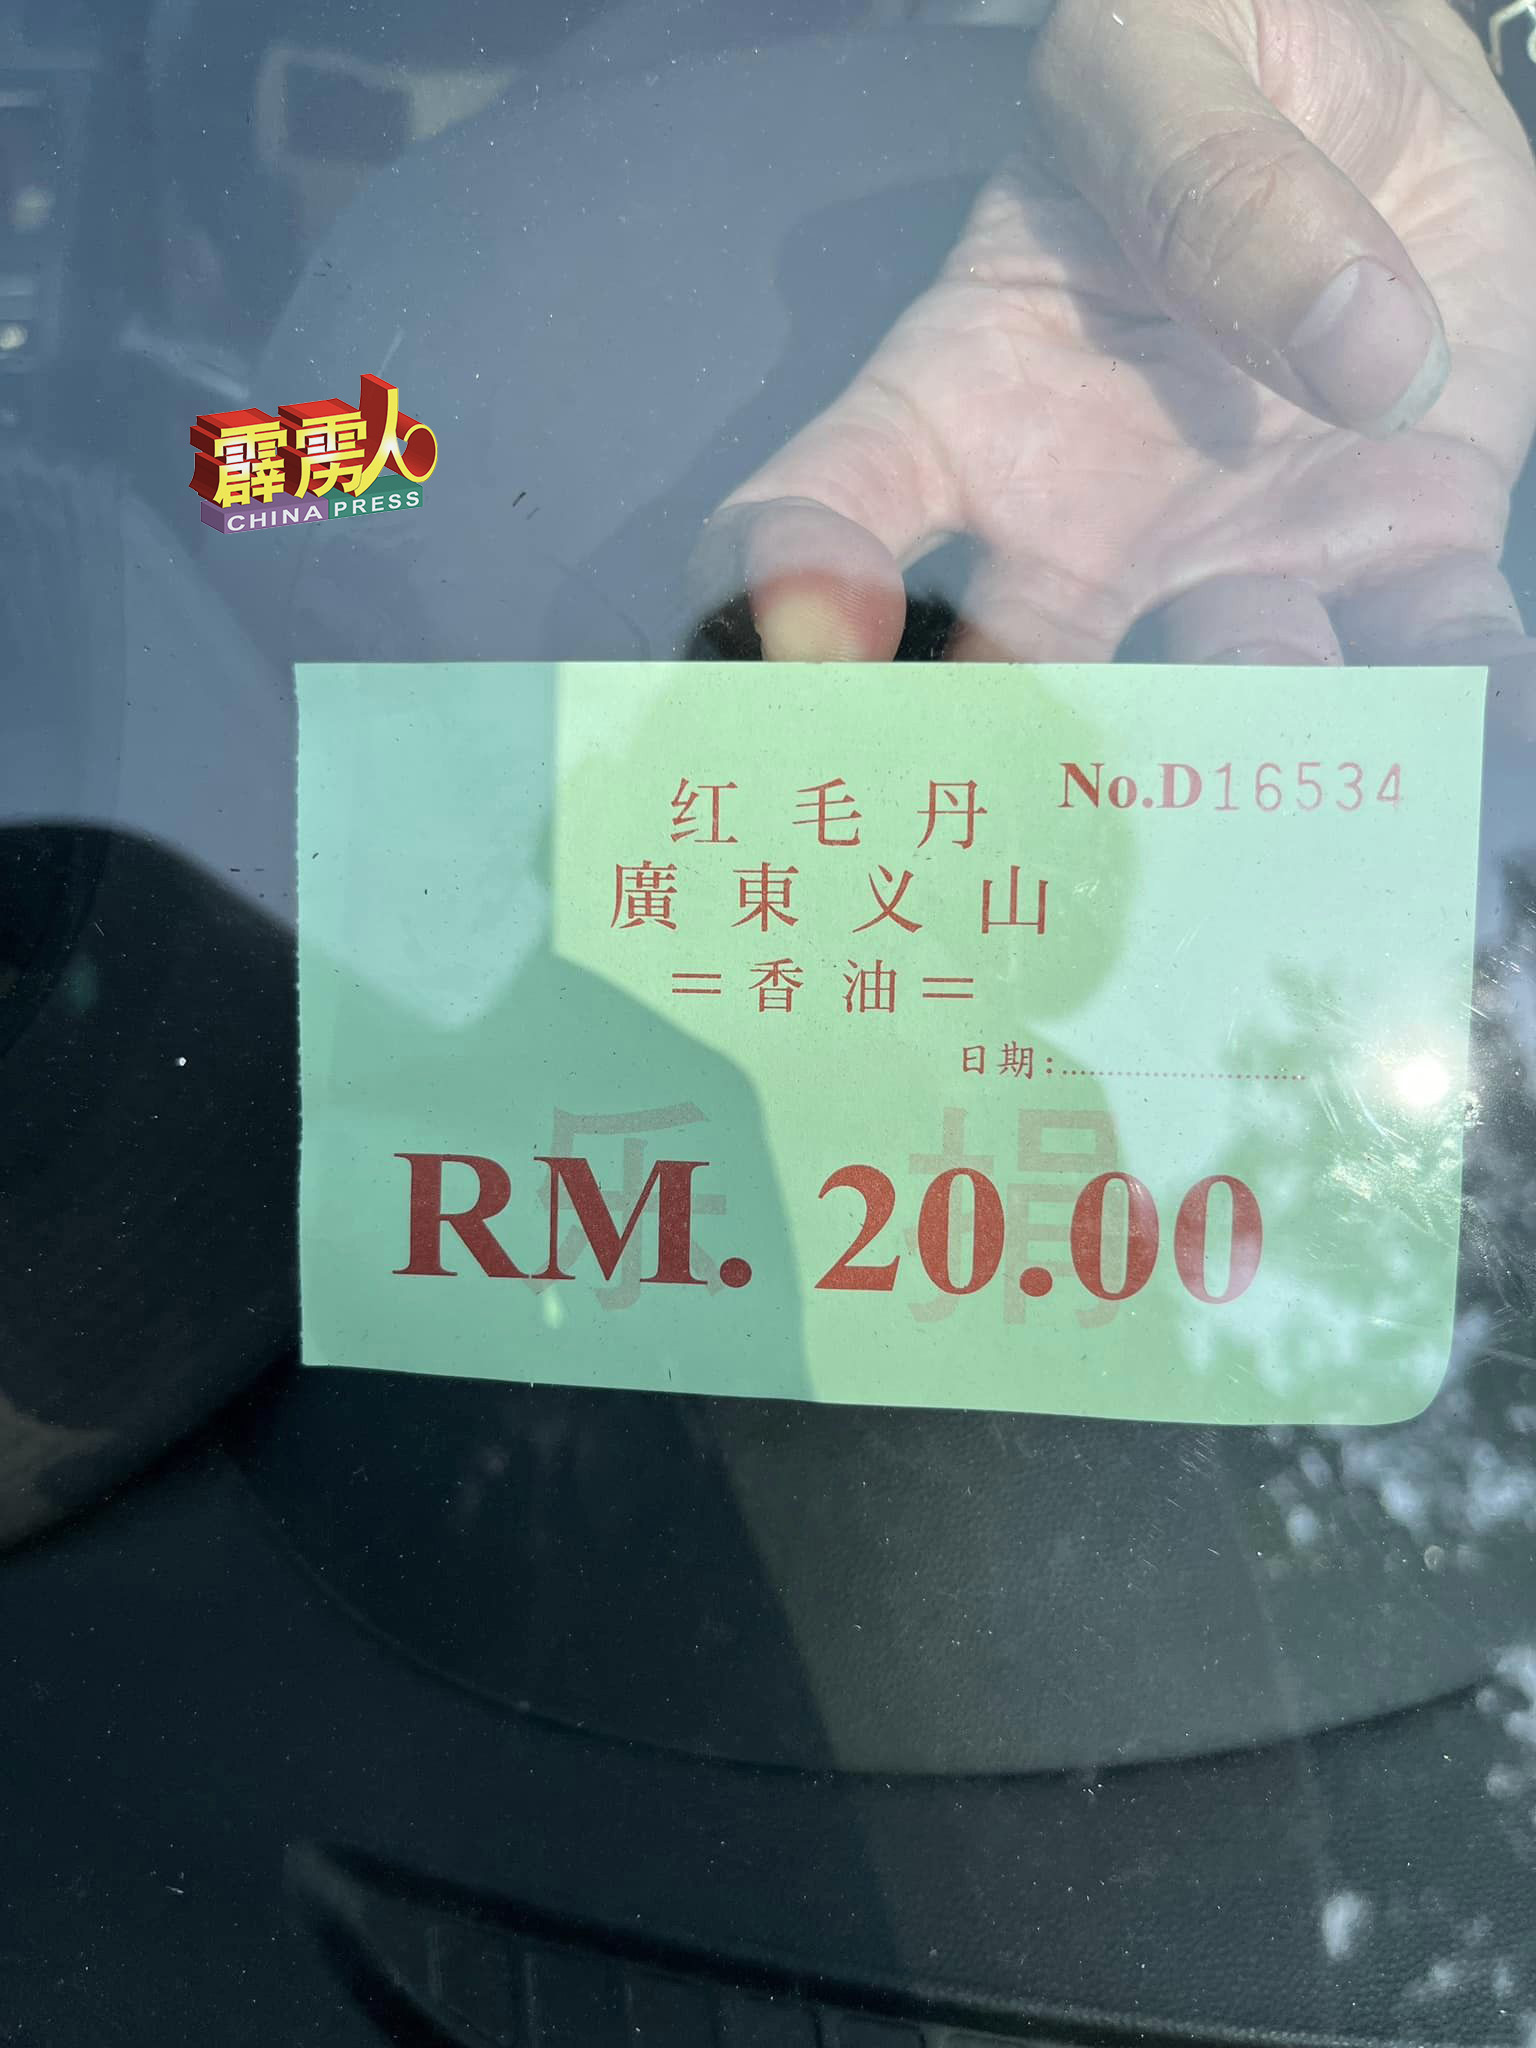 红毛丹广东义山征收辆车20令吉的费用。